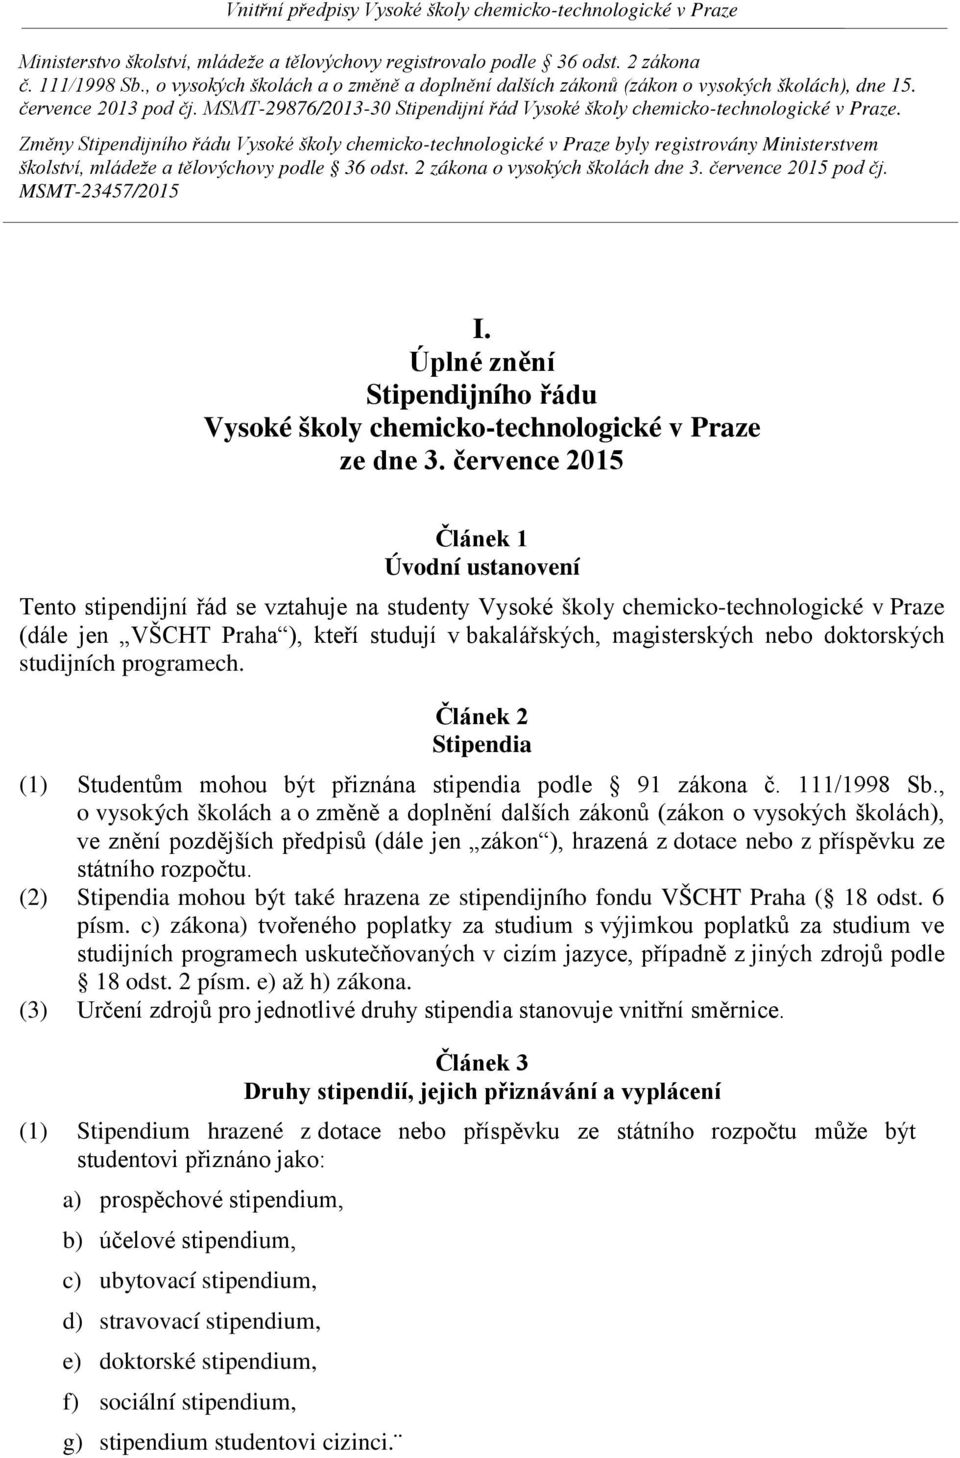 Změny Stipendijního řádu Vysoké školy chemicko-technologické v Praze byly registrovány Ministerstvem školství, mládeže a tělovýchovy podle 36 odst. 2 zákona o vysokých školách dne 3.